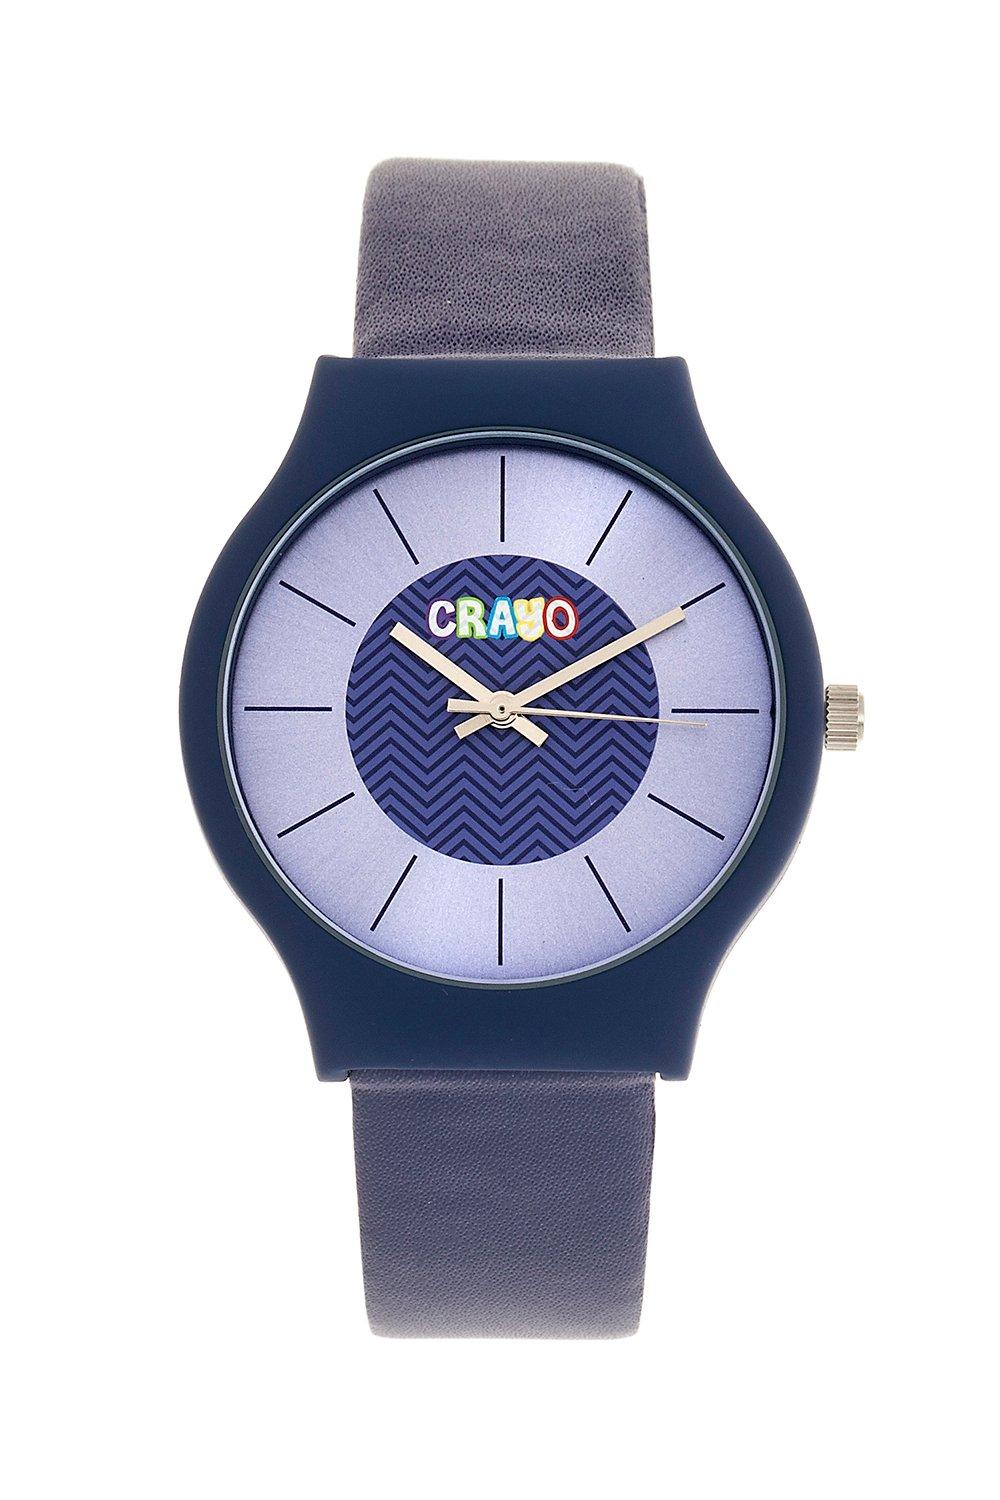 Часы унисекс Trinity Crayo, фиолетовый